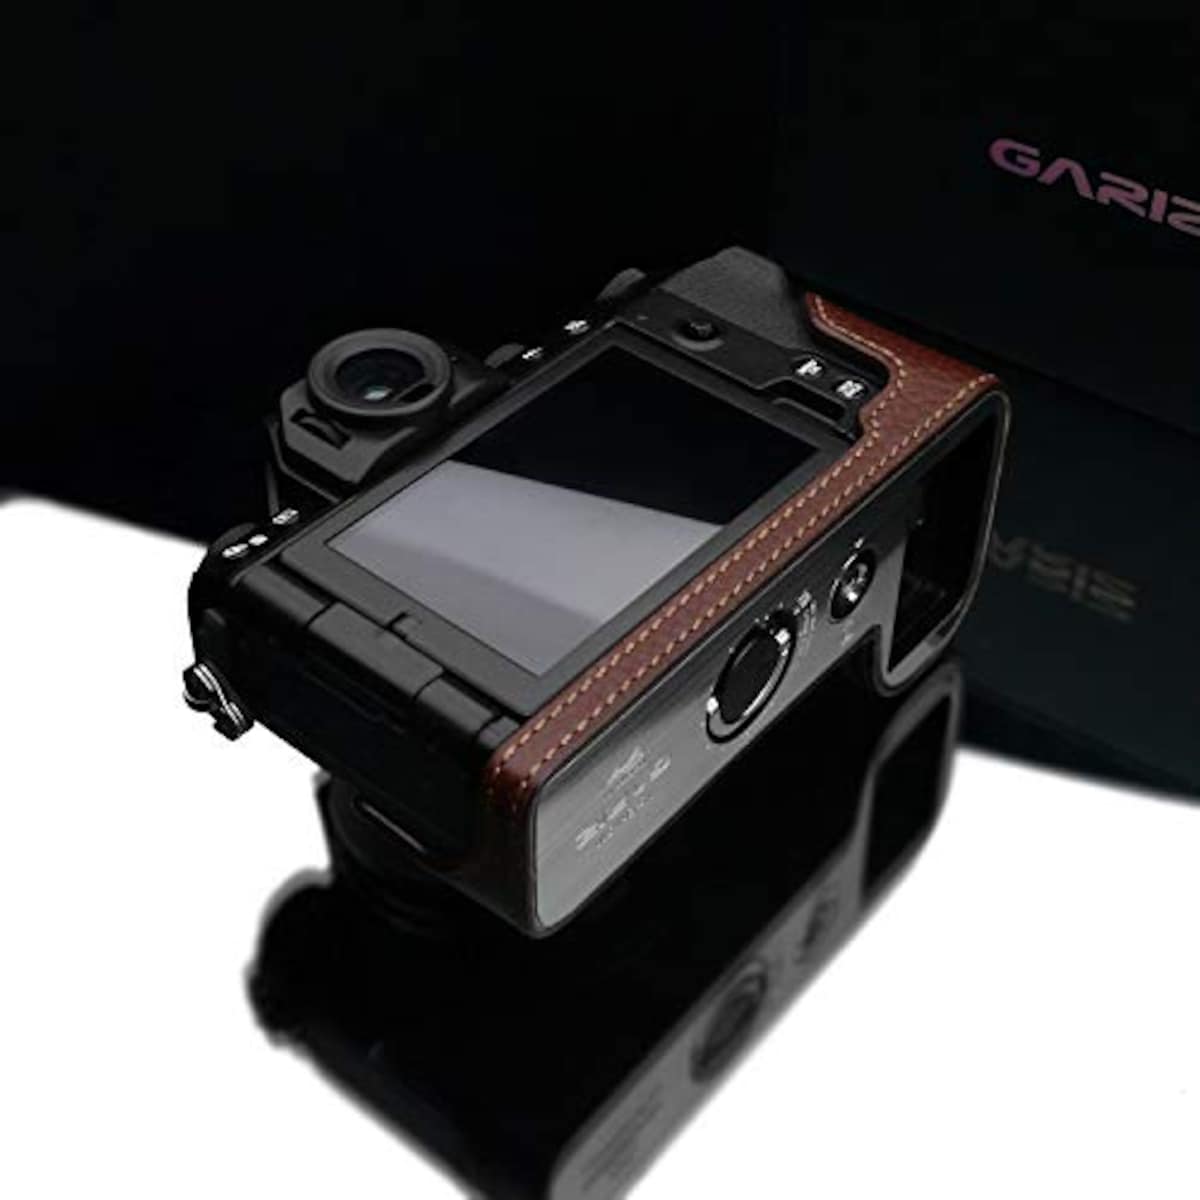  GARIZ FUJIFILM X-S10用 本革カメラケース XS-CHXS10BR ブラウン画像12 